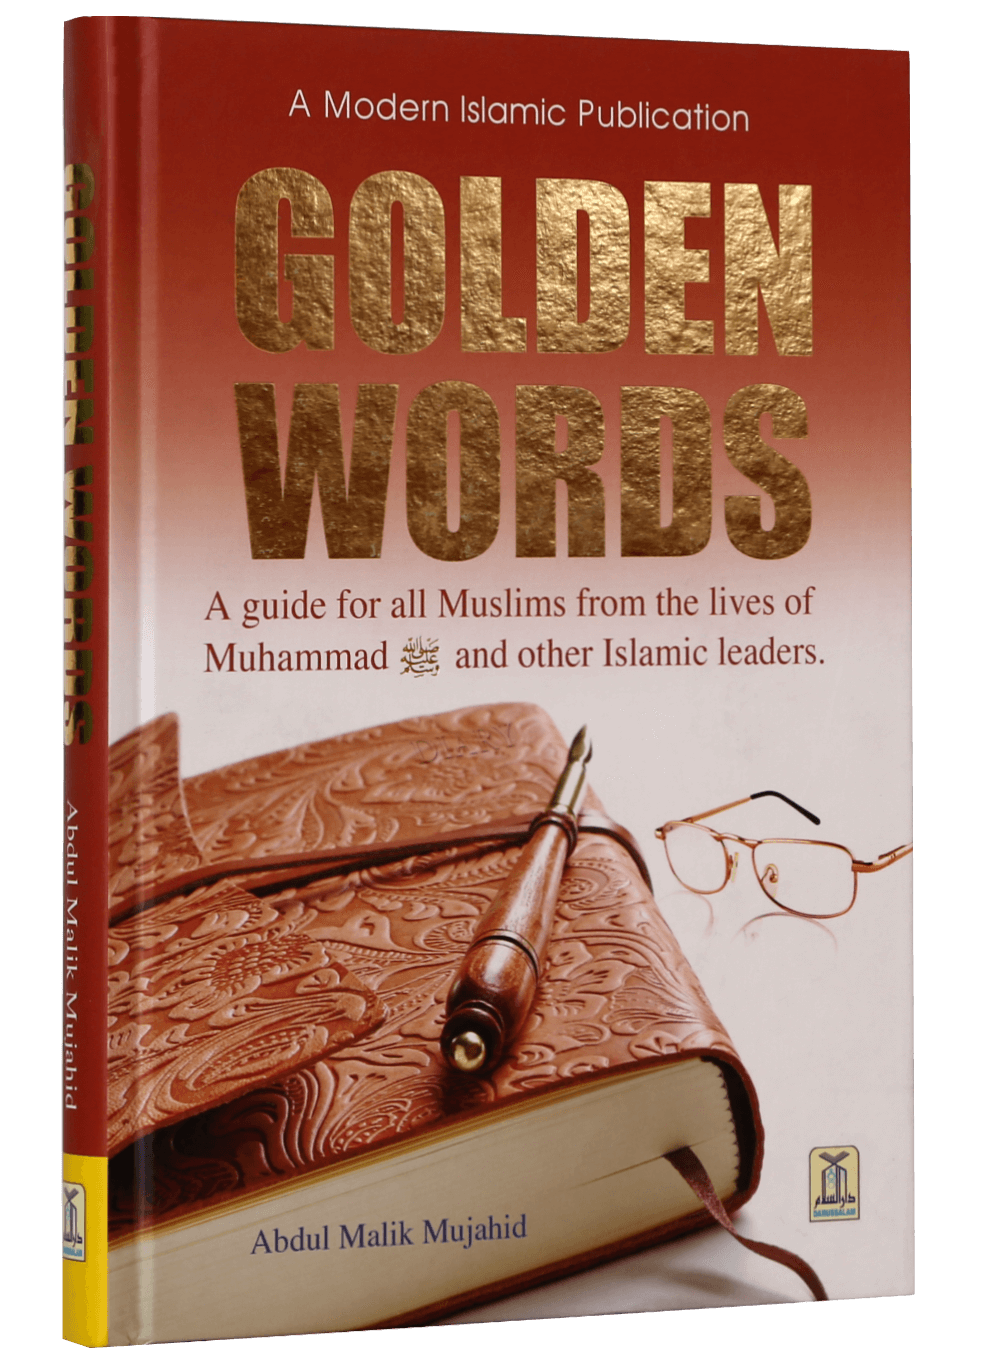 golden-words-darussalam-20180321-163618